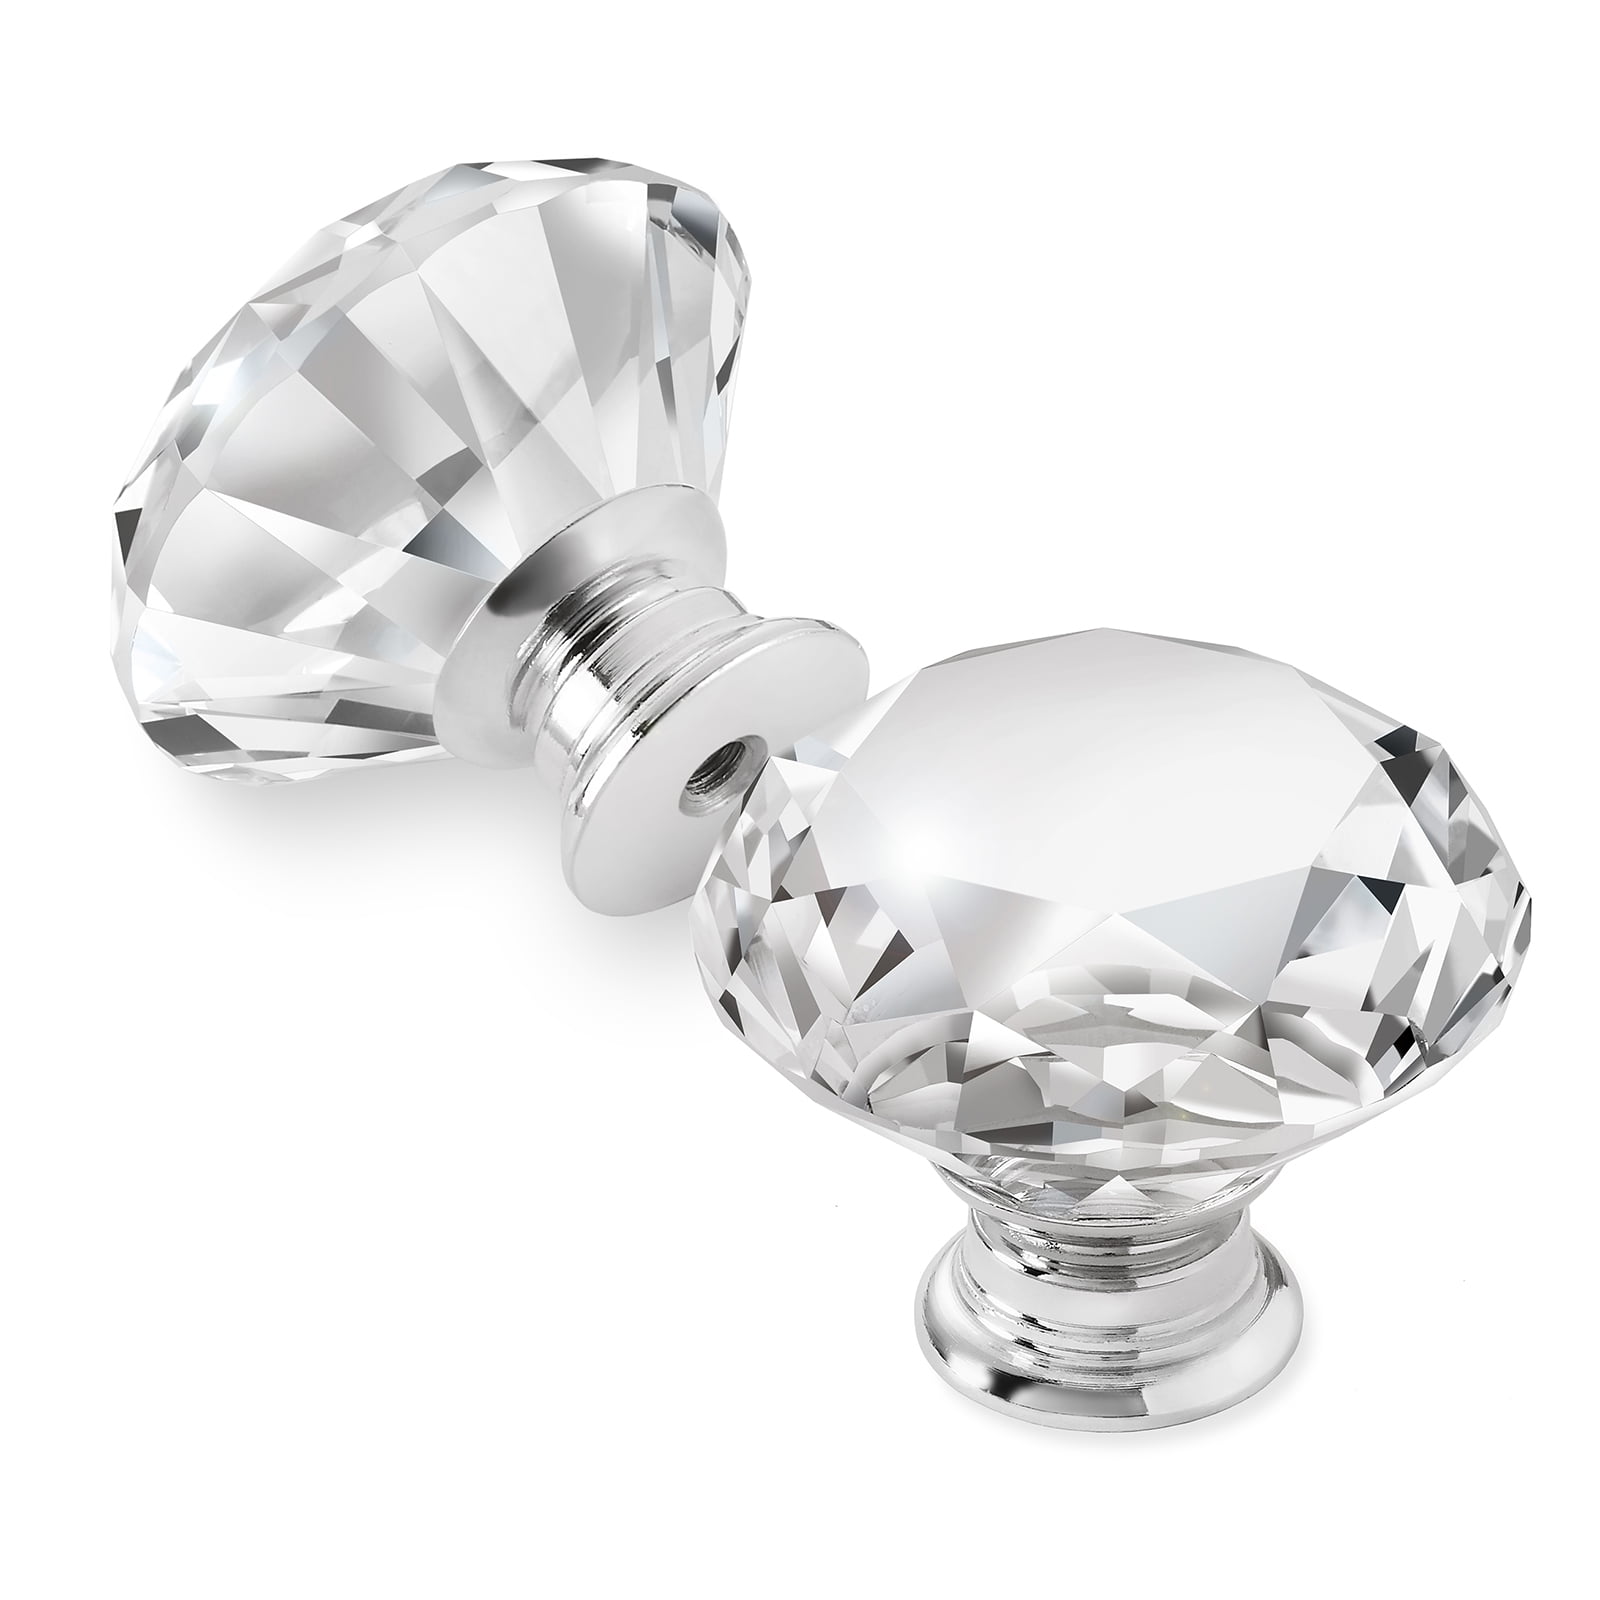 Cauldham Premium Glass Crystal Kitchen Cabinet Knobs Pulls 1 5 8